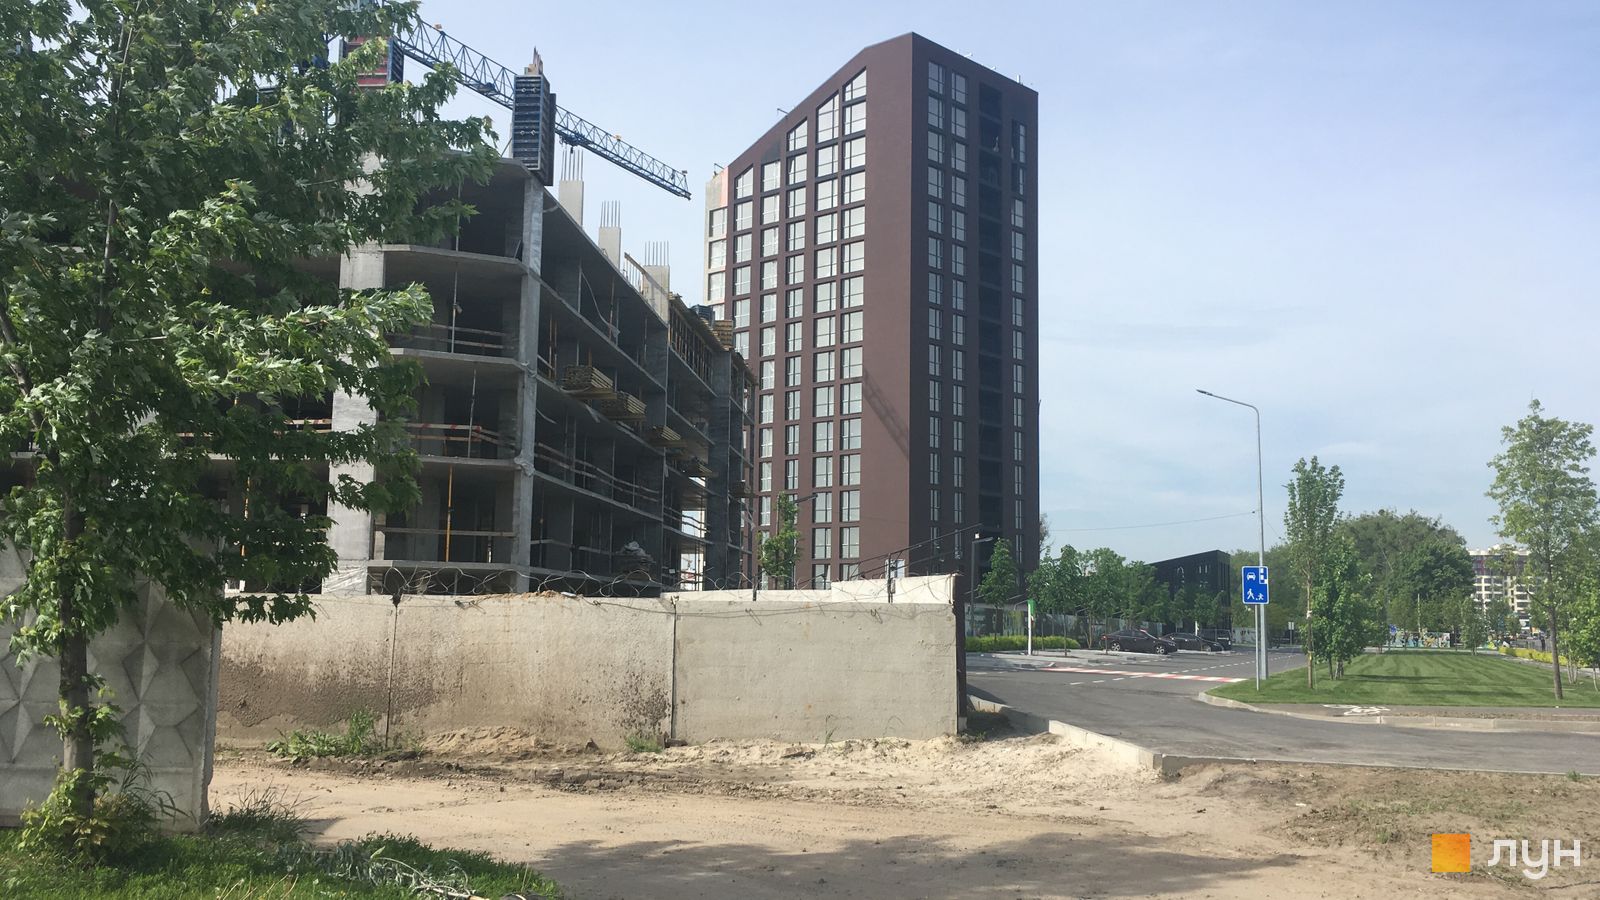 Моніторинг будівництва ЖК Paradise Avenue - Ракурс 1, май 2019